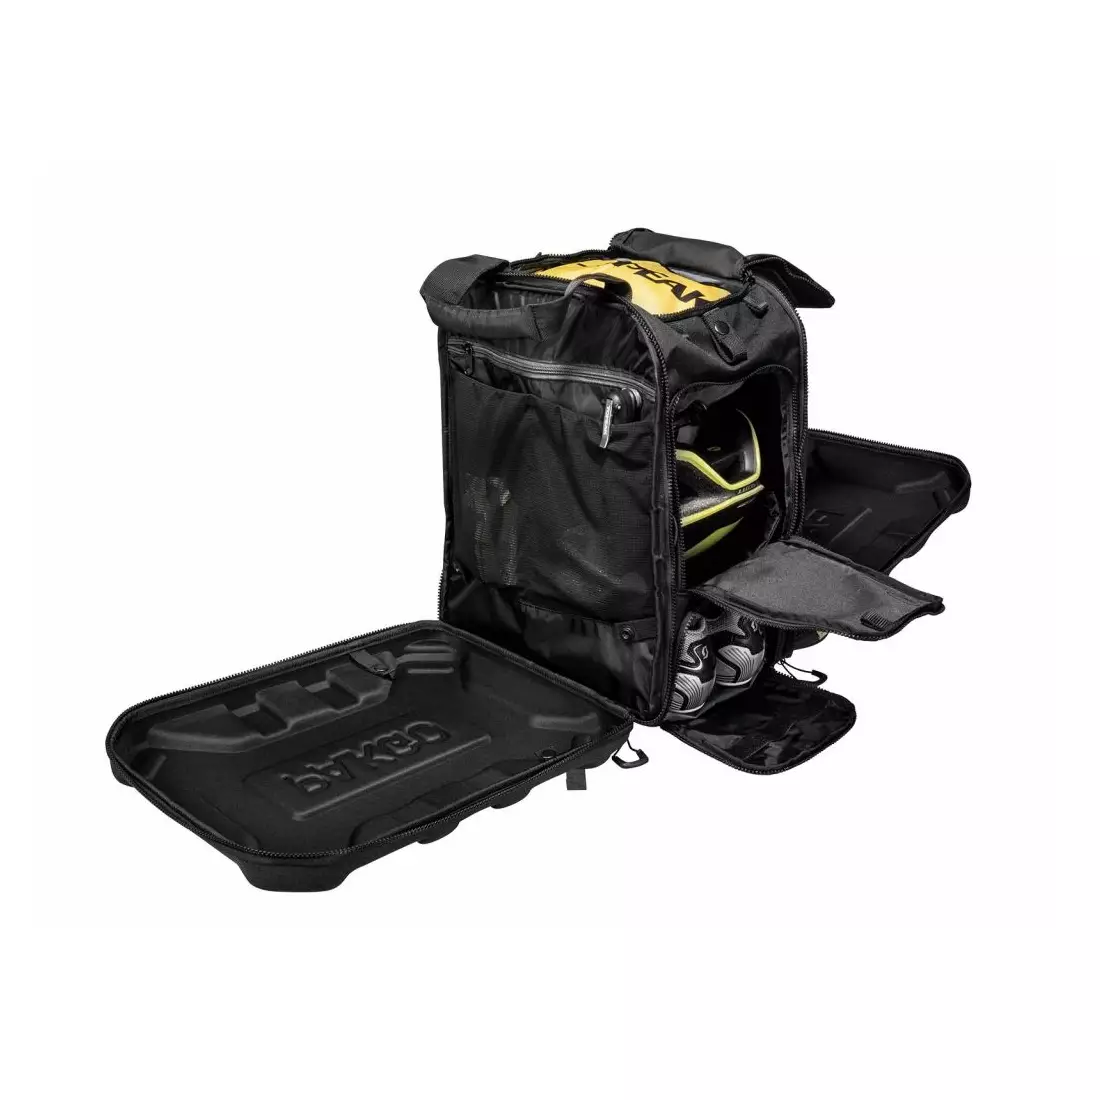 TOPEAK Tasche für Fahrradausrüstung PAKGO GEAR PACK black T-TPG-GP